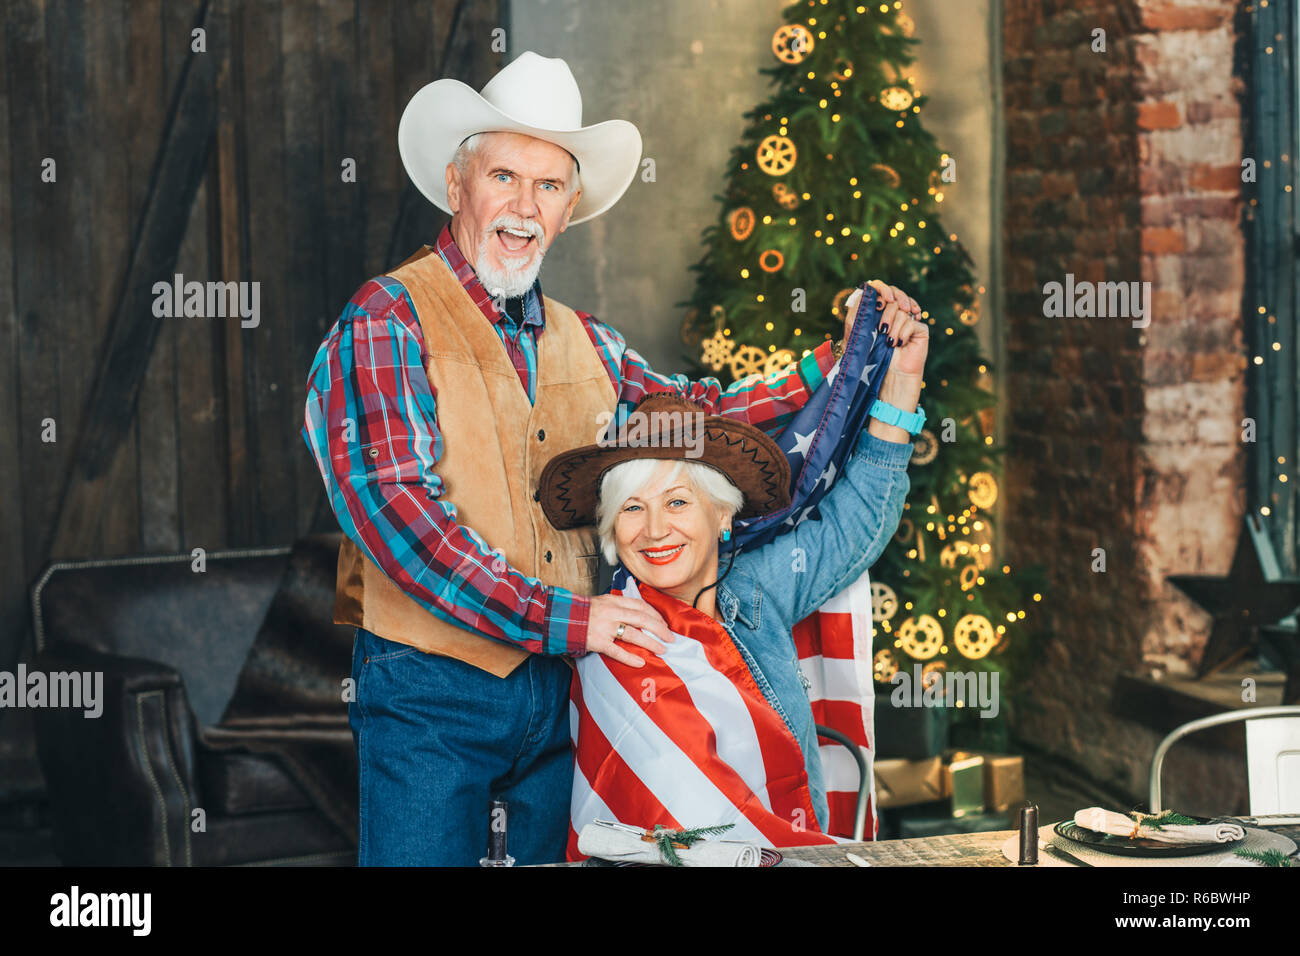 American senior couple enjoying new year on christmas tree background Stock Photo